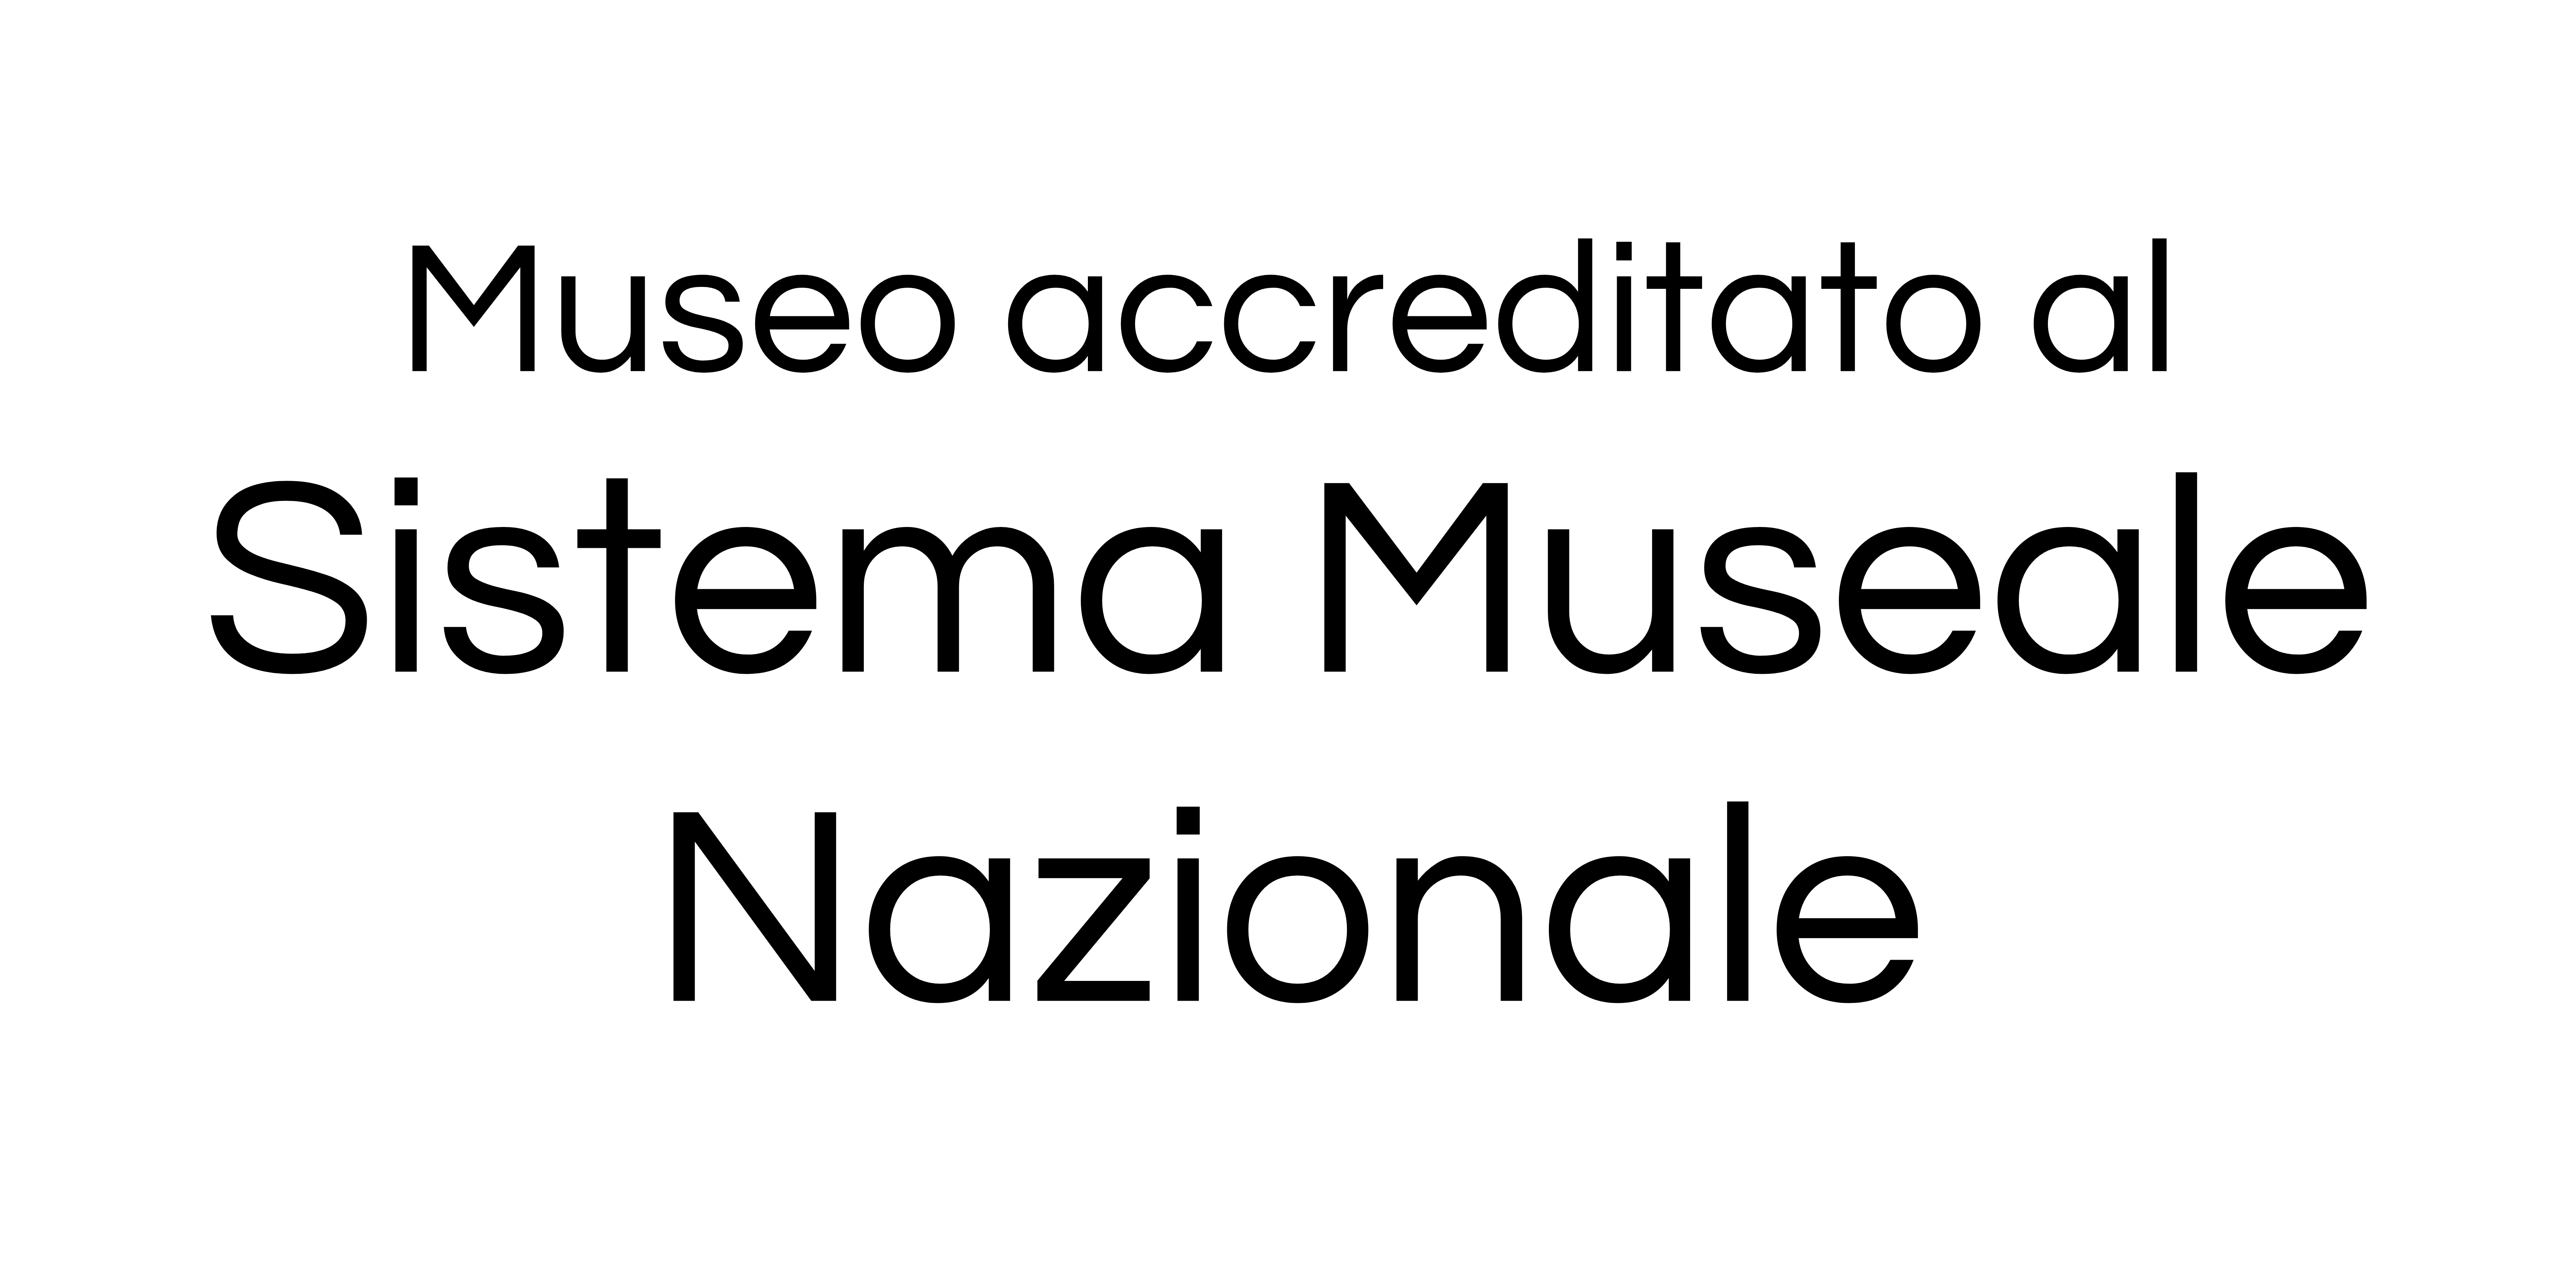 Museo accreditato al SMN